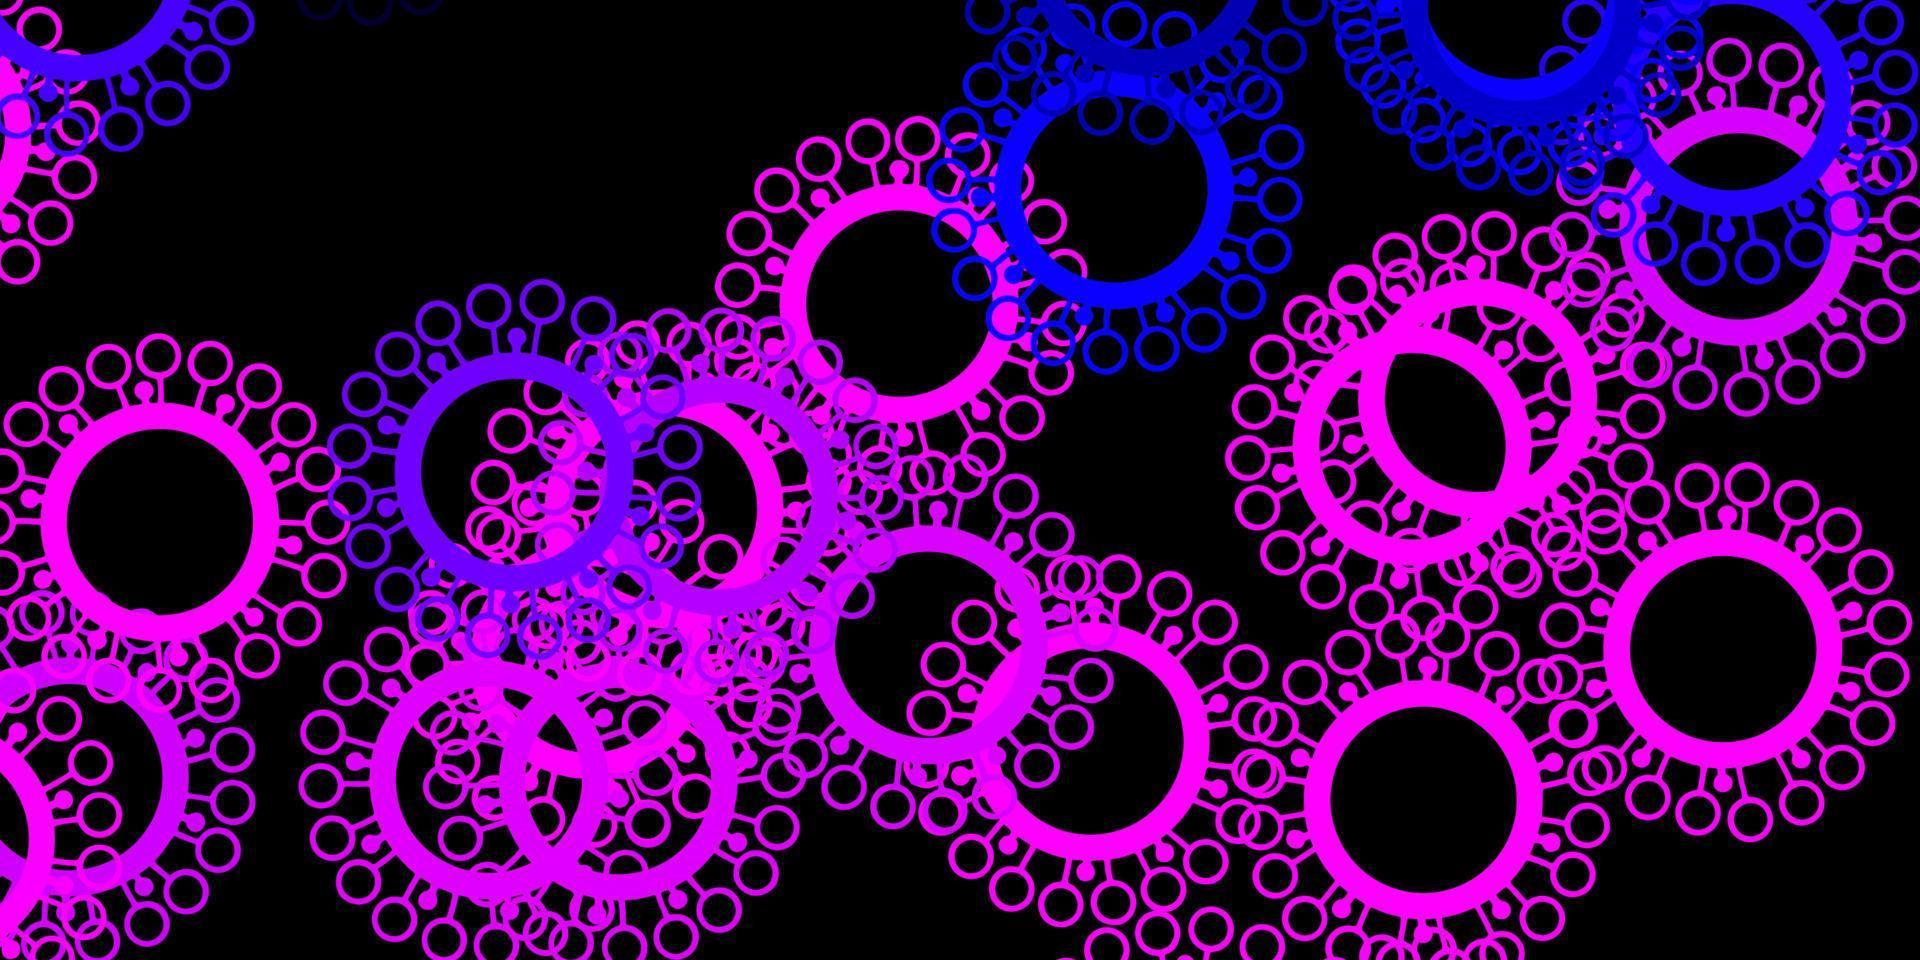 struttura di vettore viola scuro, rosa con simboli di malattia.